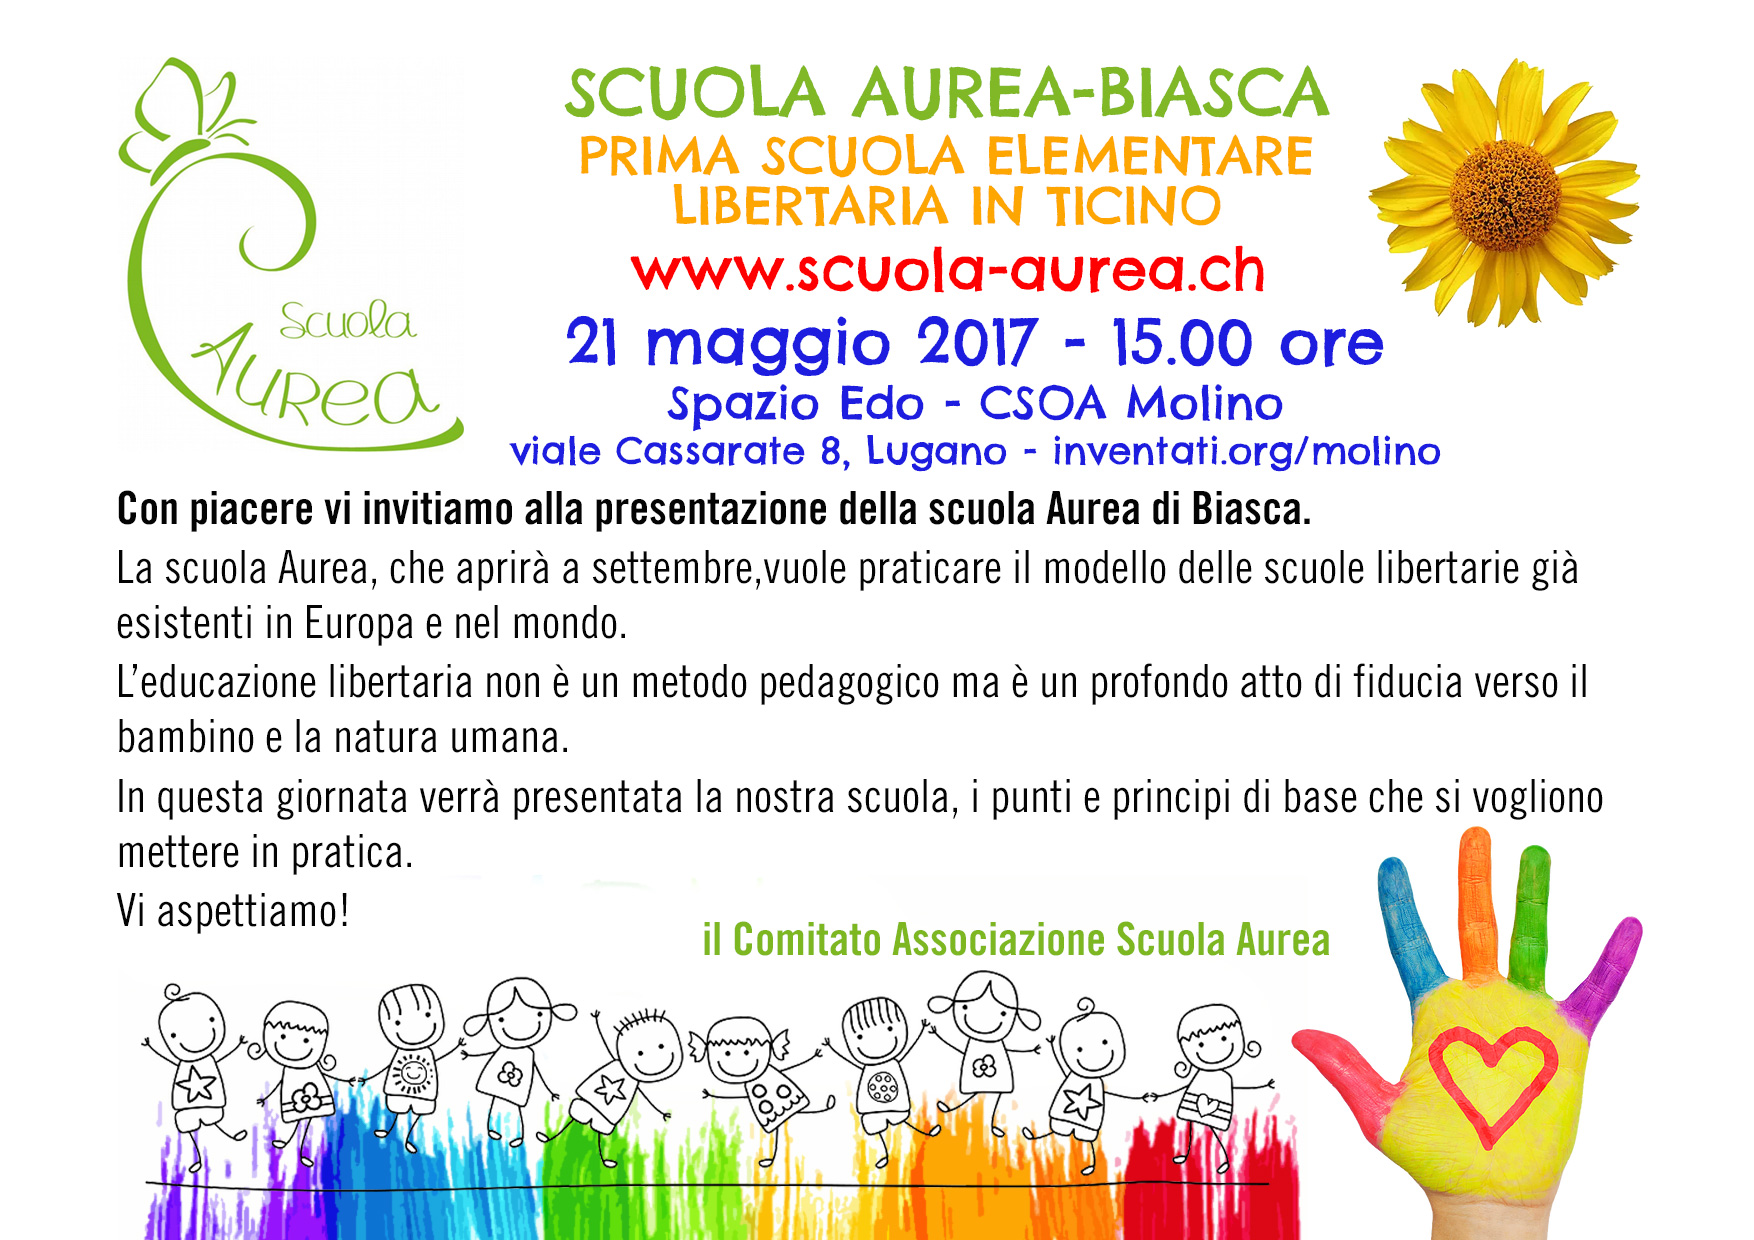 Scuola Aurea - Biasca: Prima scuola elementare libertaria in Ticino